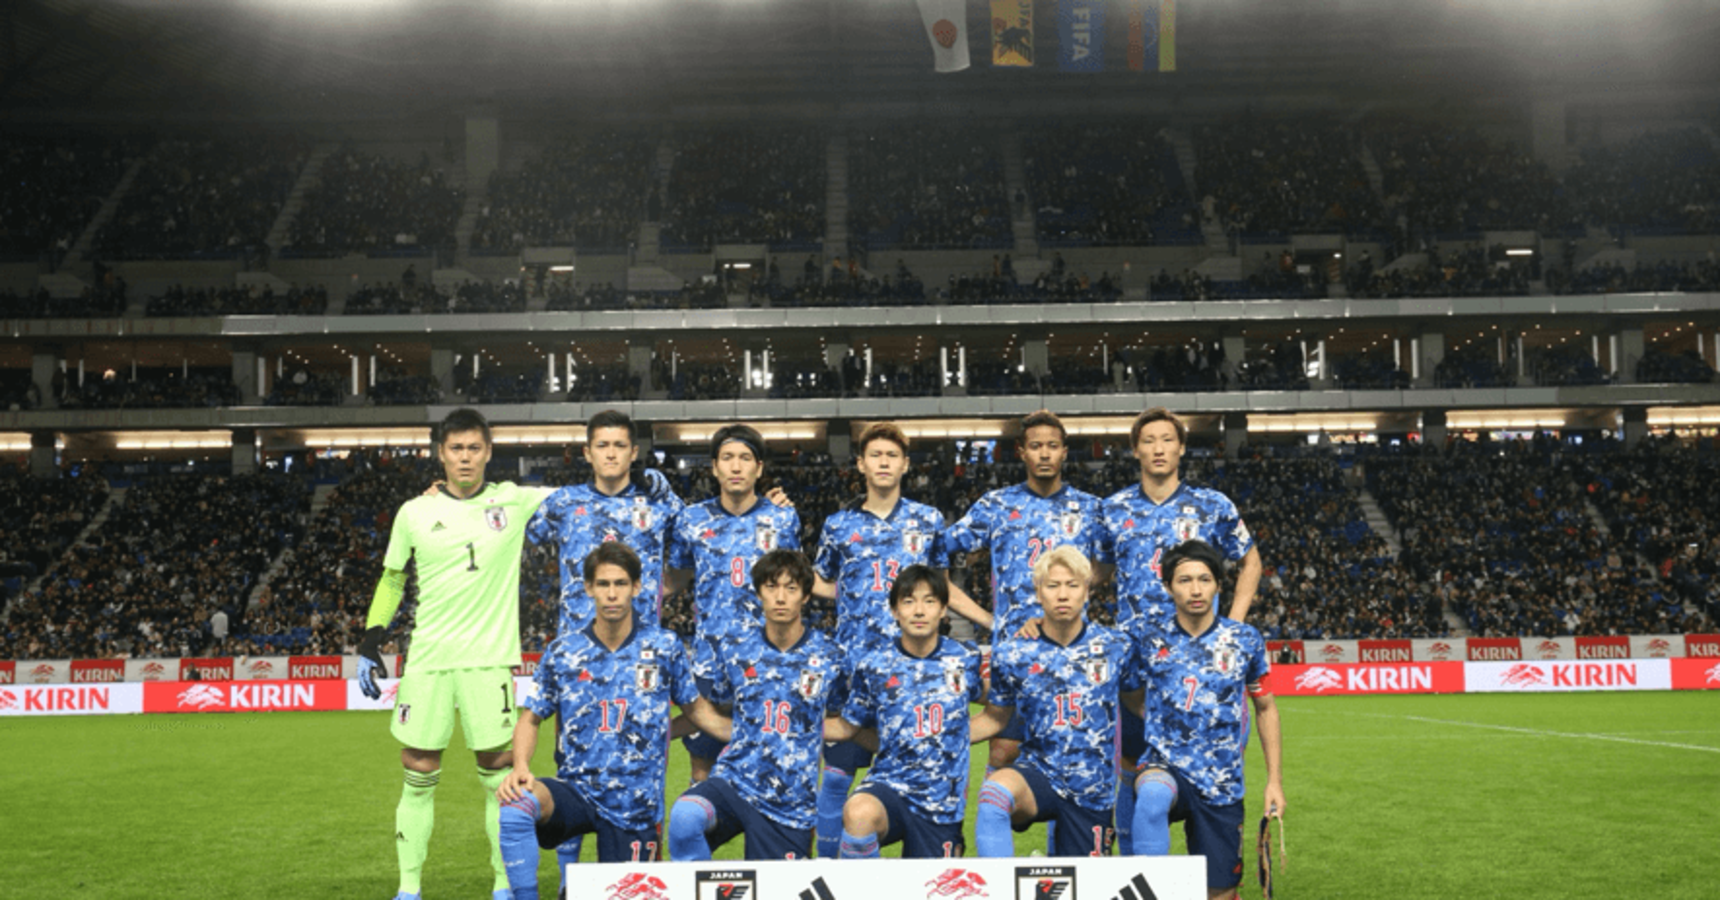 キリンとサッカー日本代表 40年の絆 支援 ではなく 応援 だ Azrena